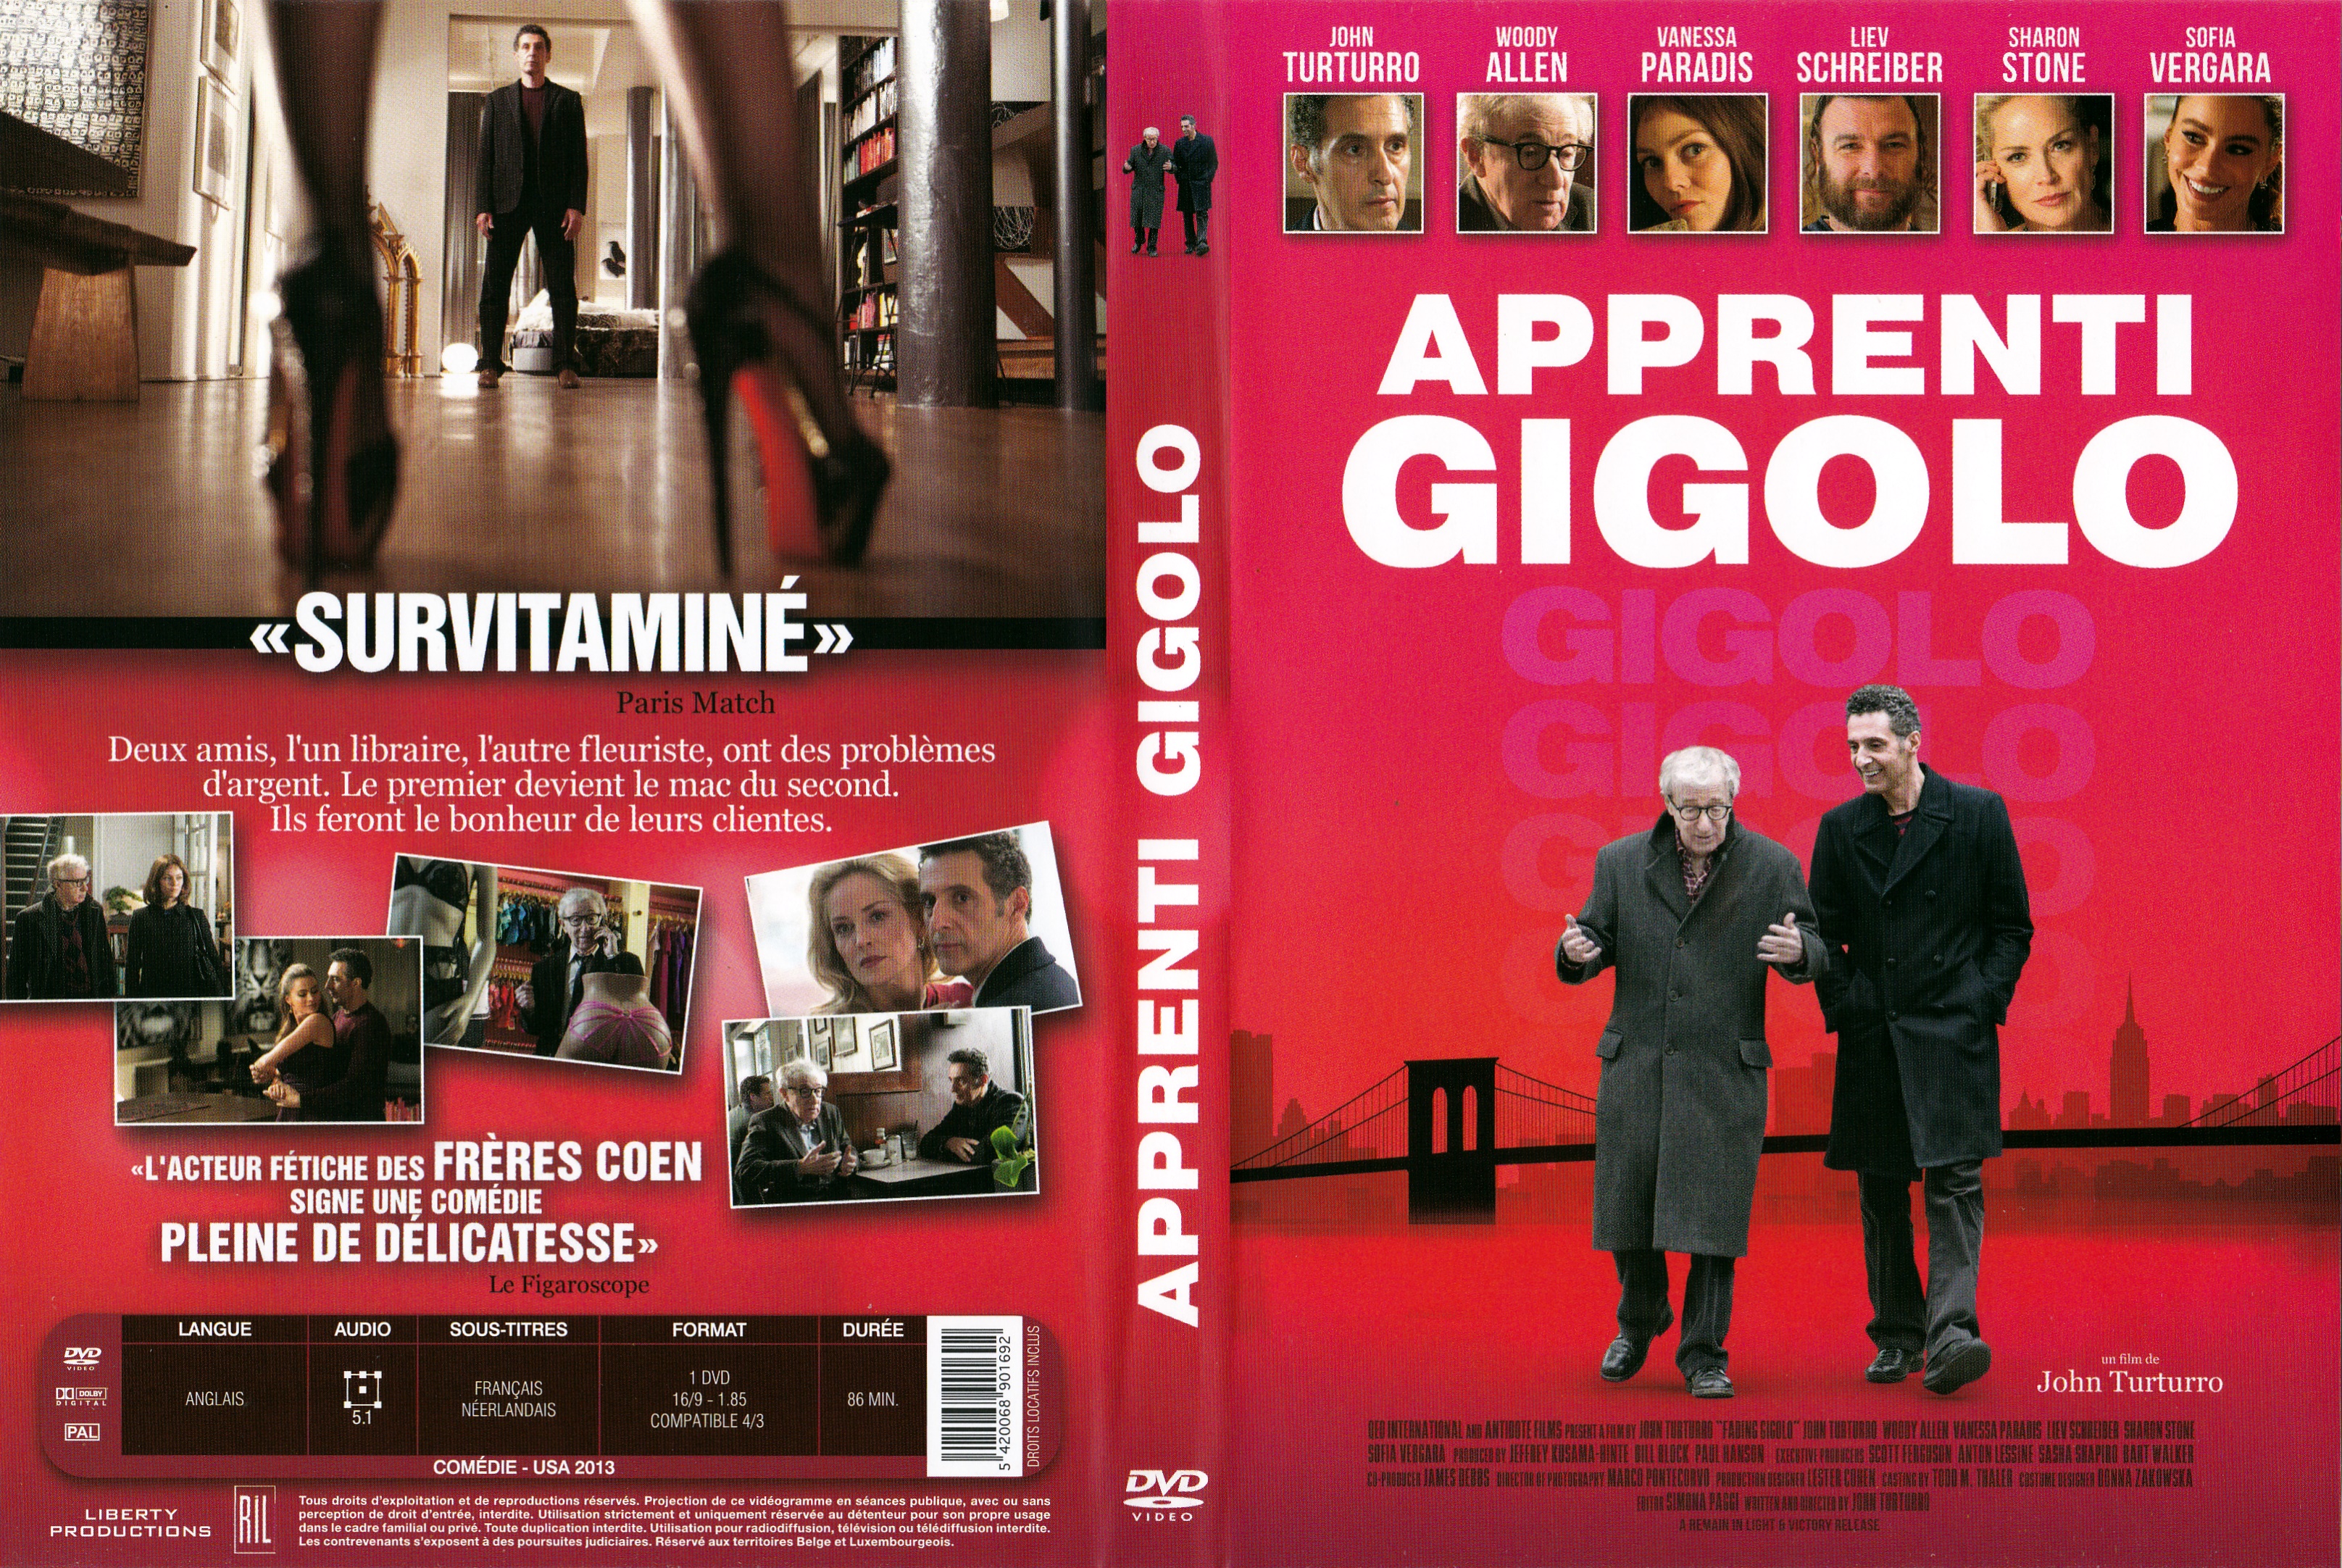 Jaquette DVD Apprenti gigolo v2